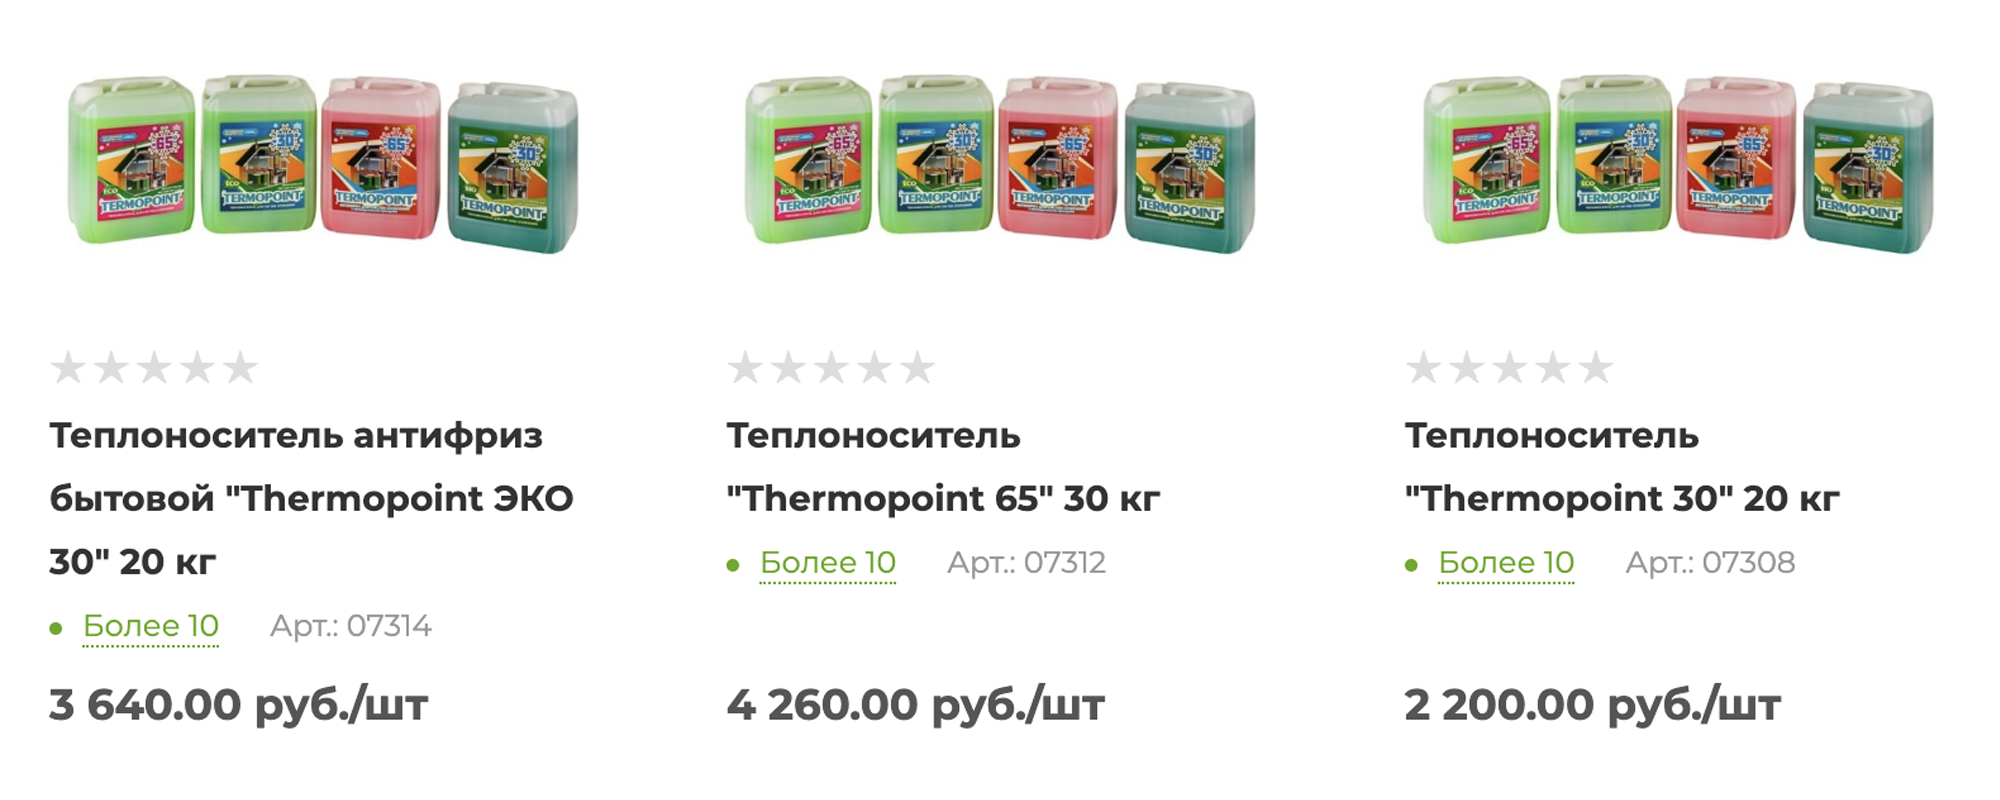 20 кг антифриза стоит от 2200 ₽. Источник: msk.tdsu.ru